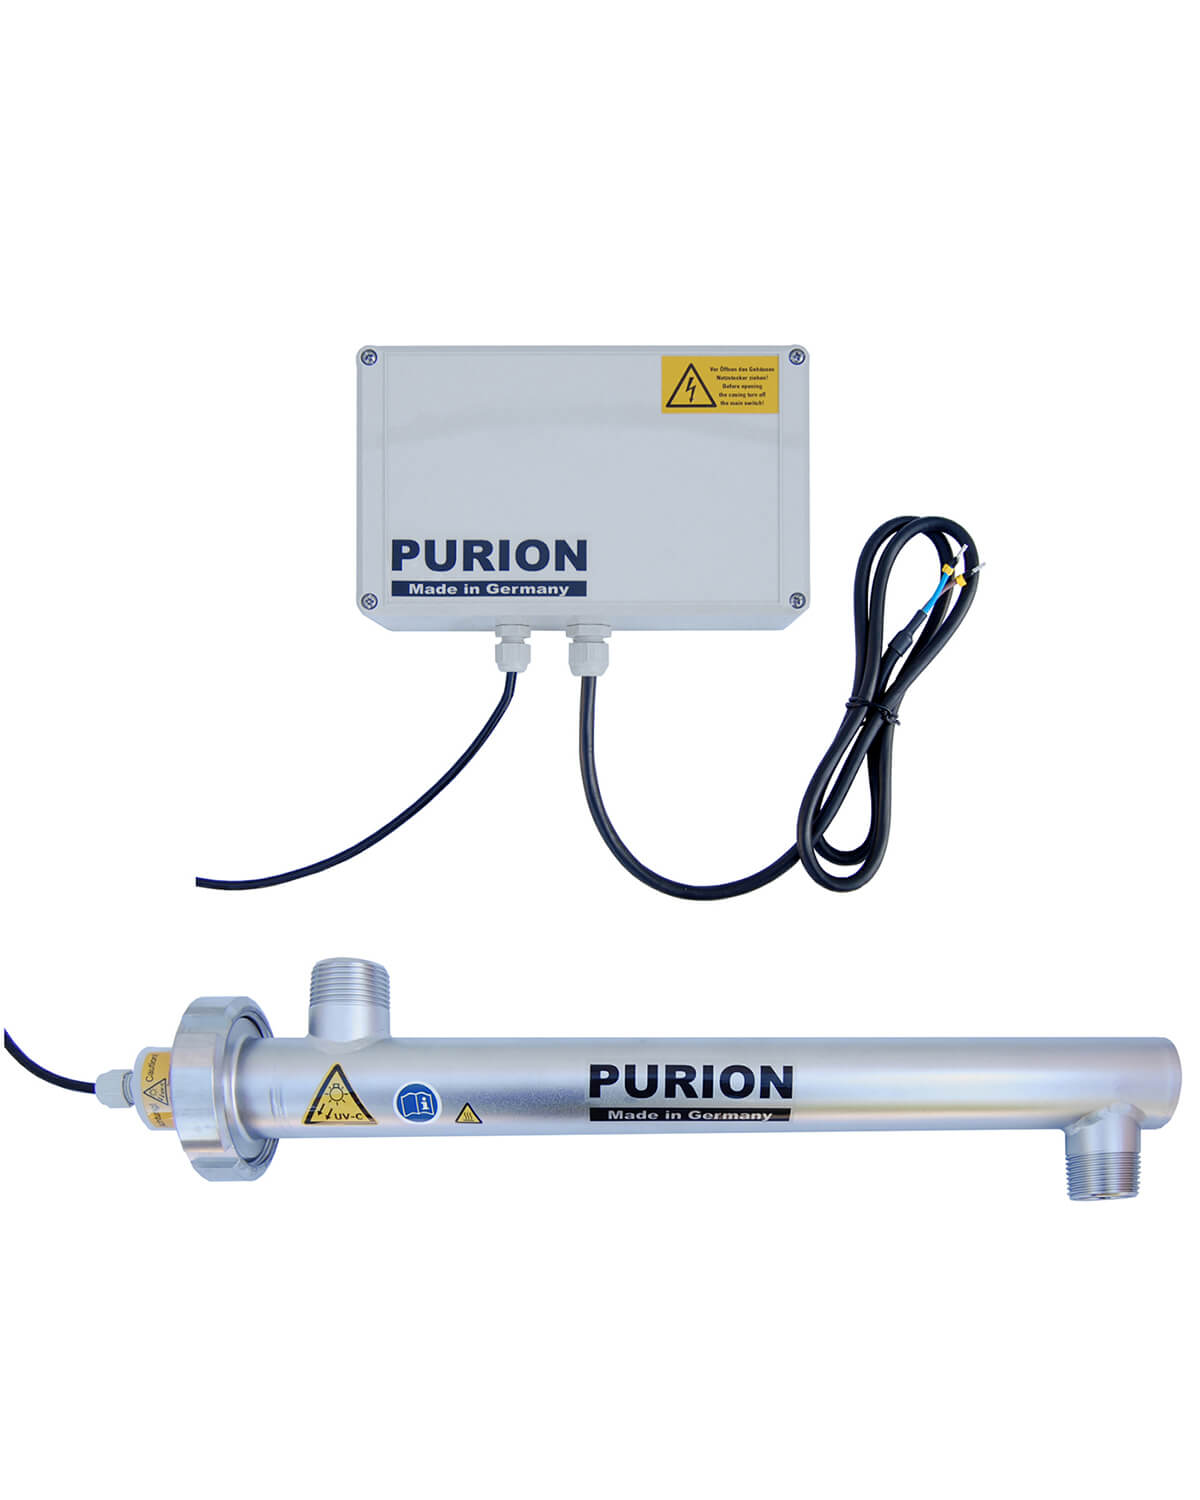 Die PURION GmbH ist eine zuverlässige und effiziente Lösung zur Wasserdesinfektion. Mit ihrer fortschrittlichen Technologie sorgt die PURION GmbH für die Selbstversorgung mit sauberem und sicherem Trinkwasser. Egal, ob Sie eine Installation, Wartung oder einen anderen damit verbundenen Eingriff planen, PURION 1000 12/24 V DC Basic der PURION GmbH ist die perfekte Wahl für eine effektive Wasserdesinfektion.